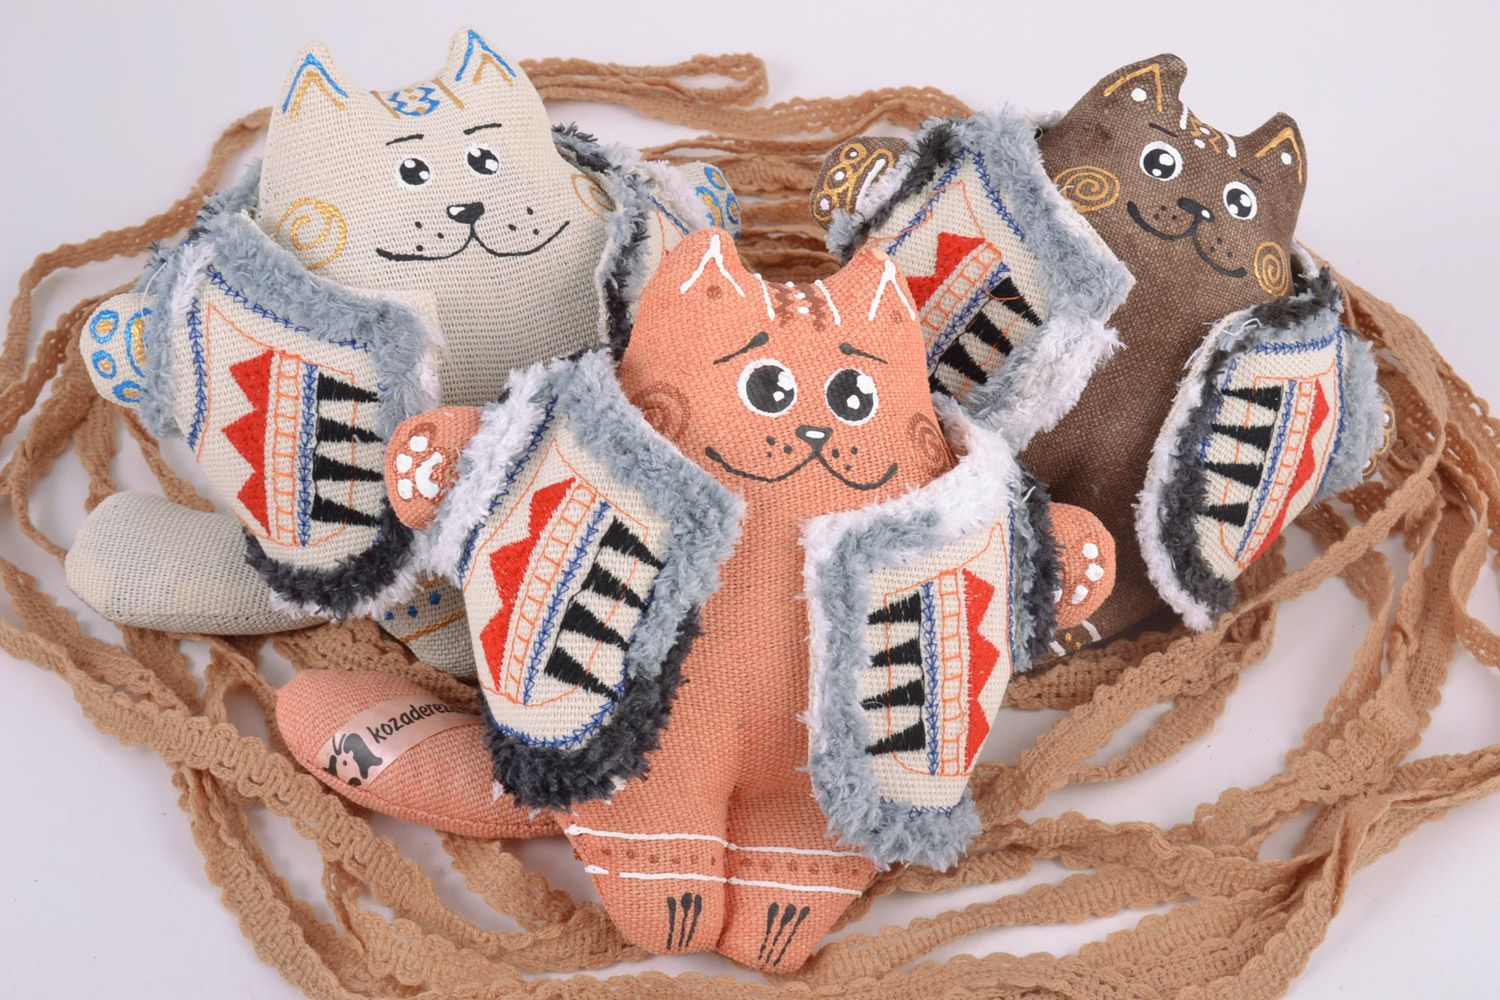 Petites peluches décoratives en tissu peintes faites main 3 chats en gilets photo 1